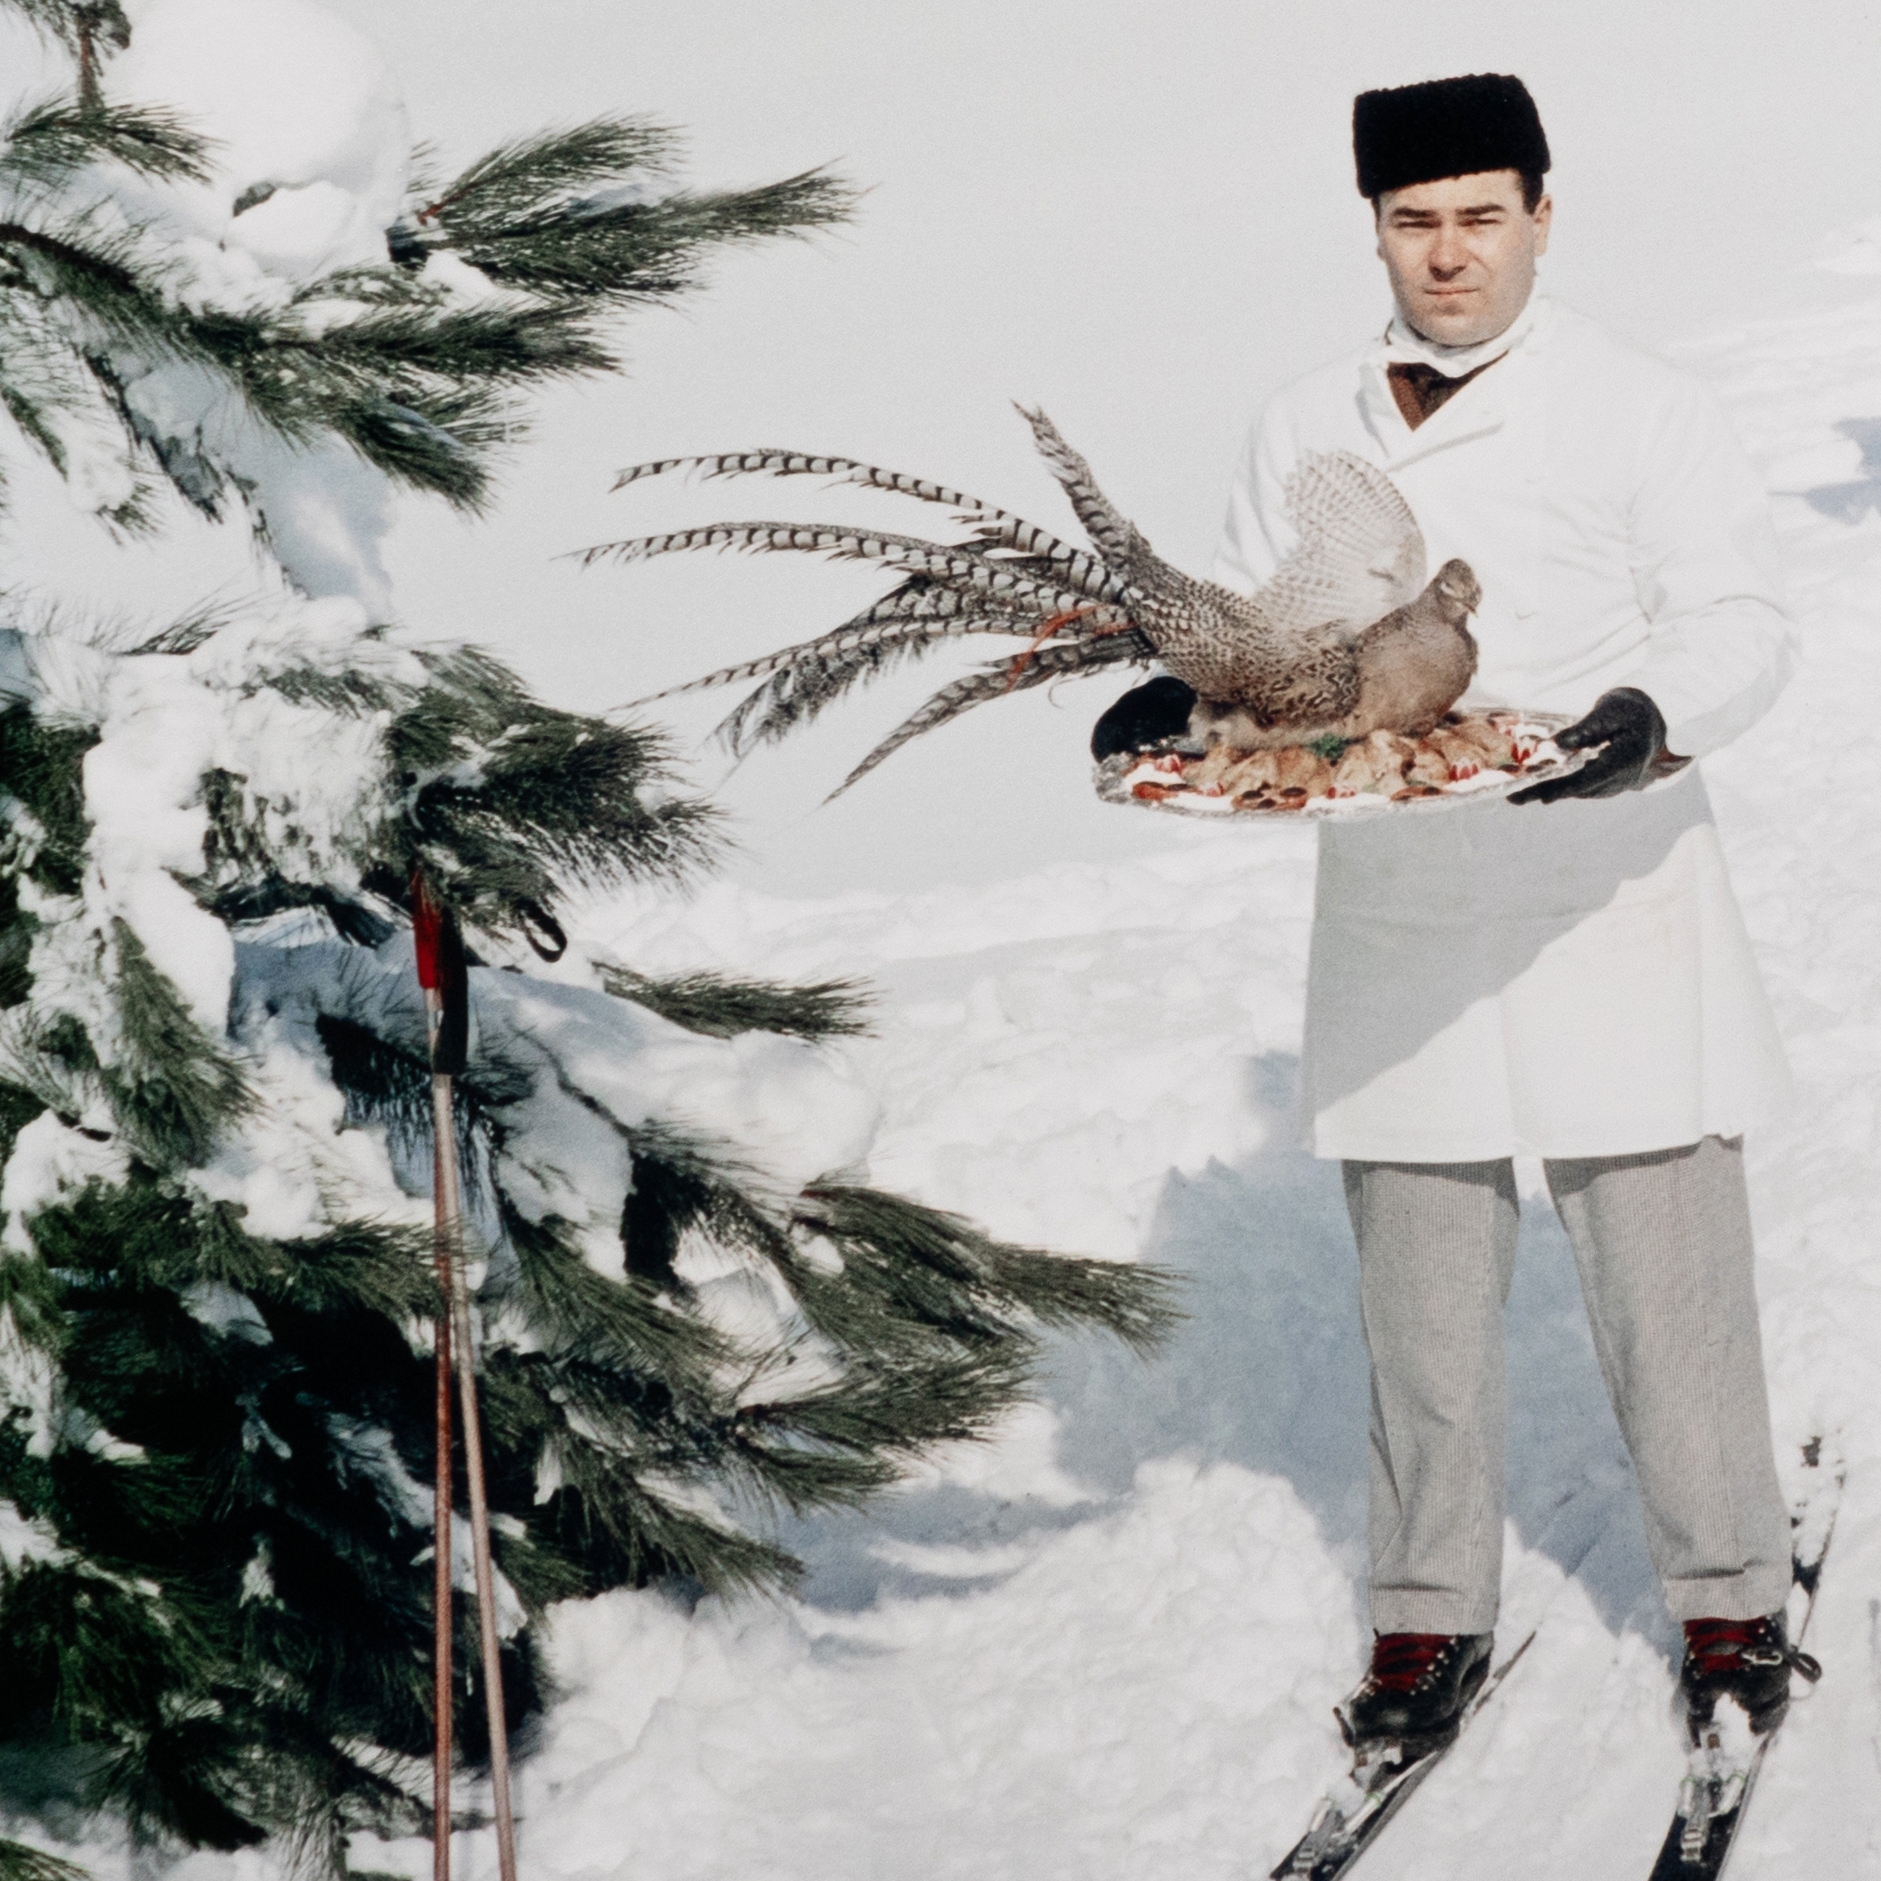 Skiing Waiters By Slim Aarons - Image 3